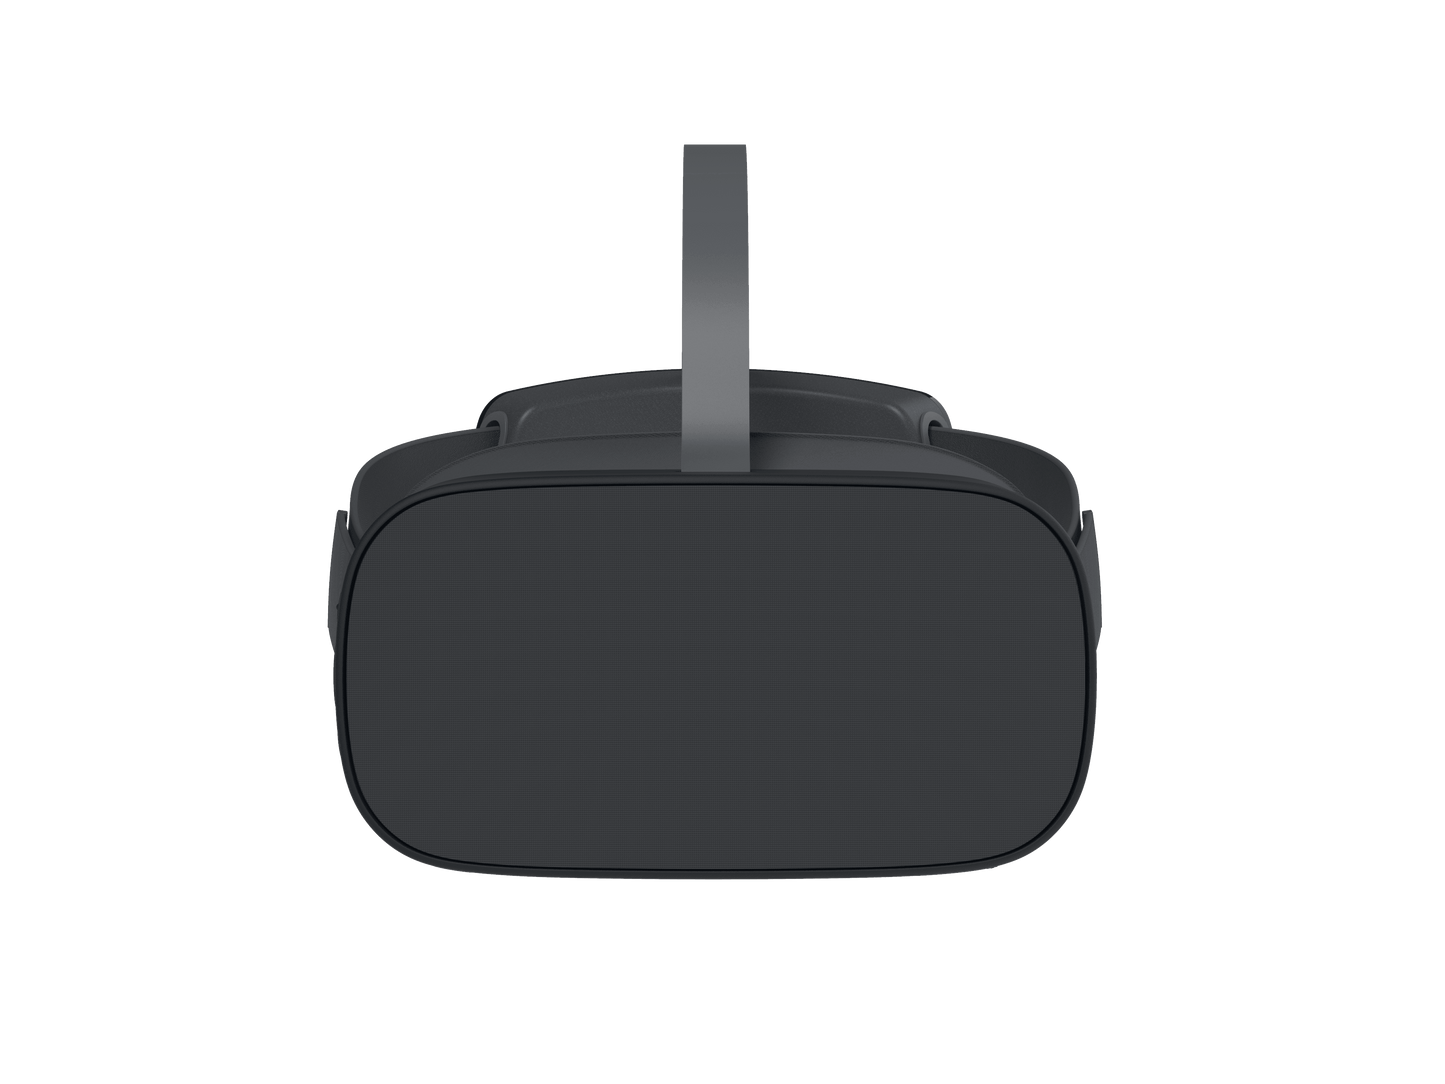 Pico G2 4K - 3 DoF (Gafas de Realidad Virtual) - XRShop